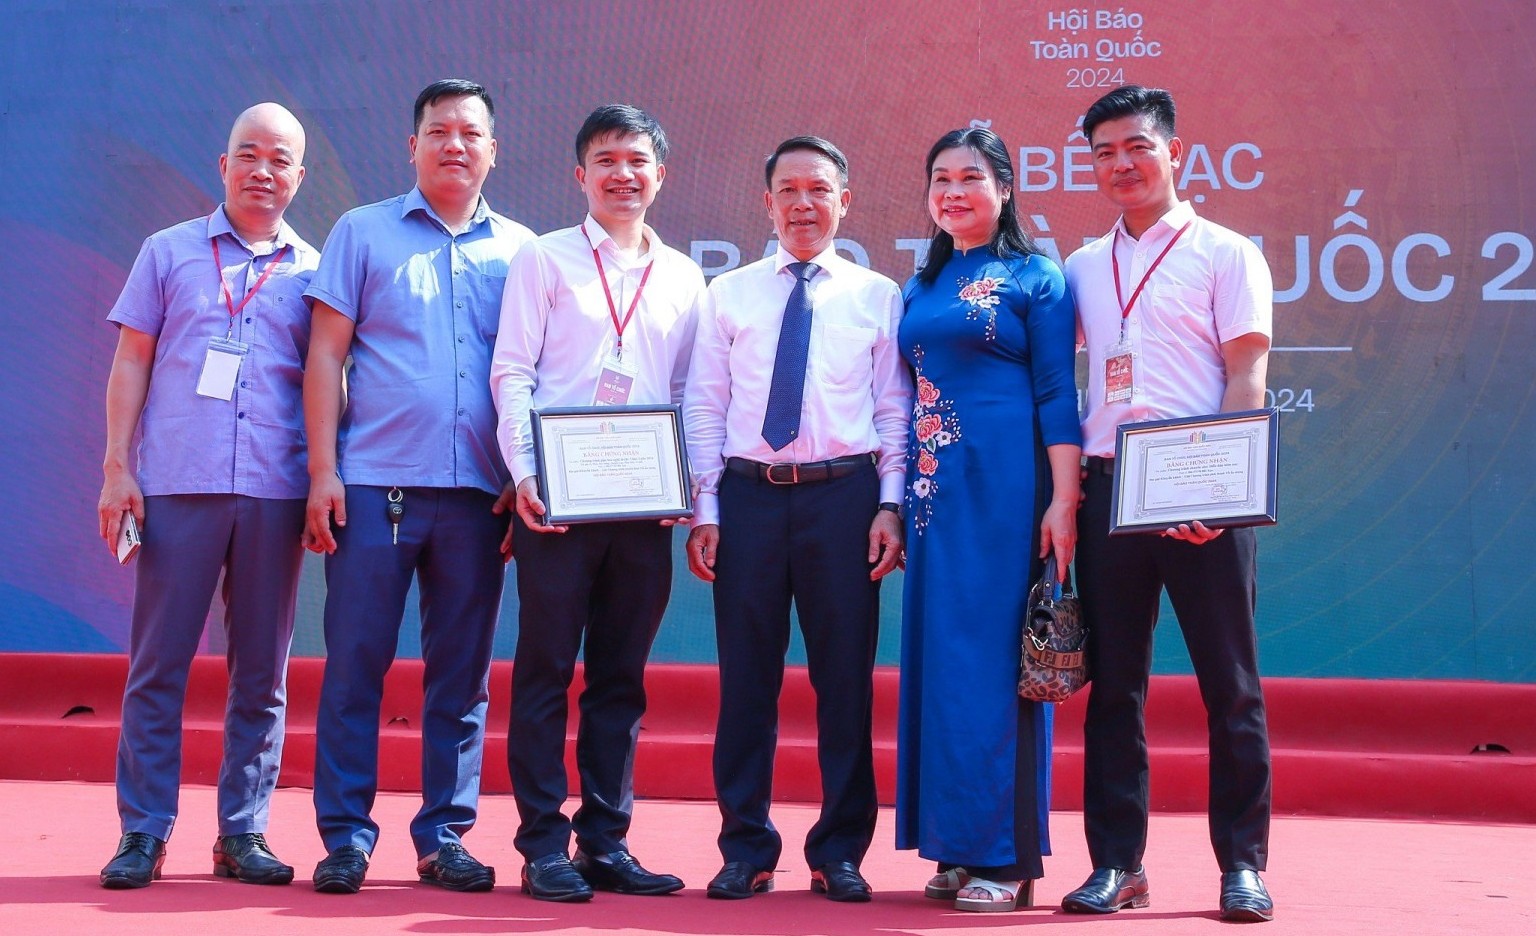 Tạp chí Sức khỏe Việt vinh dự nhận giải thưởng tại Hội báo toàn quốc 2024